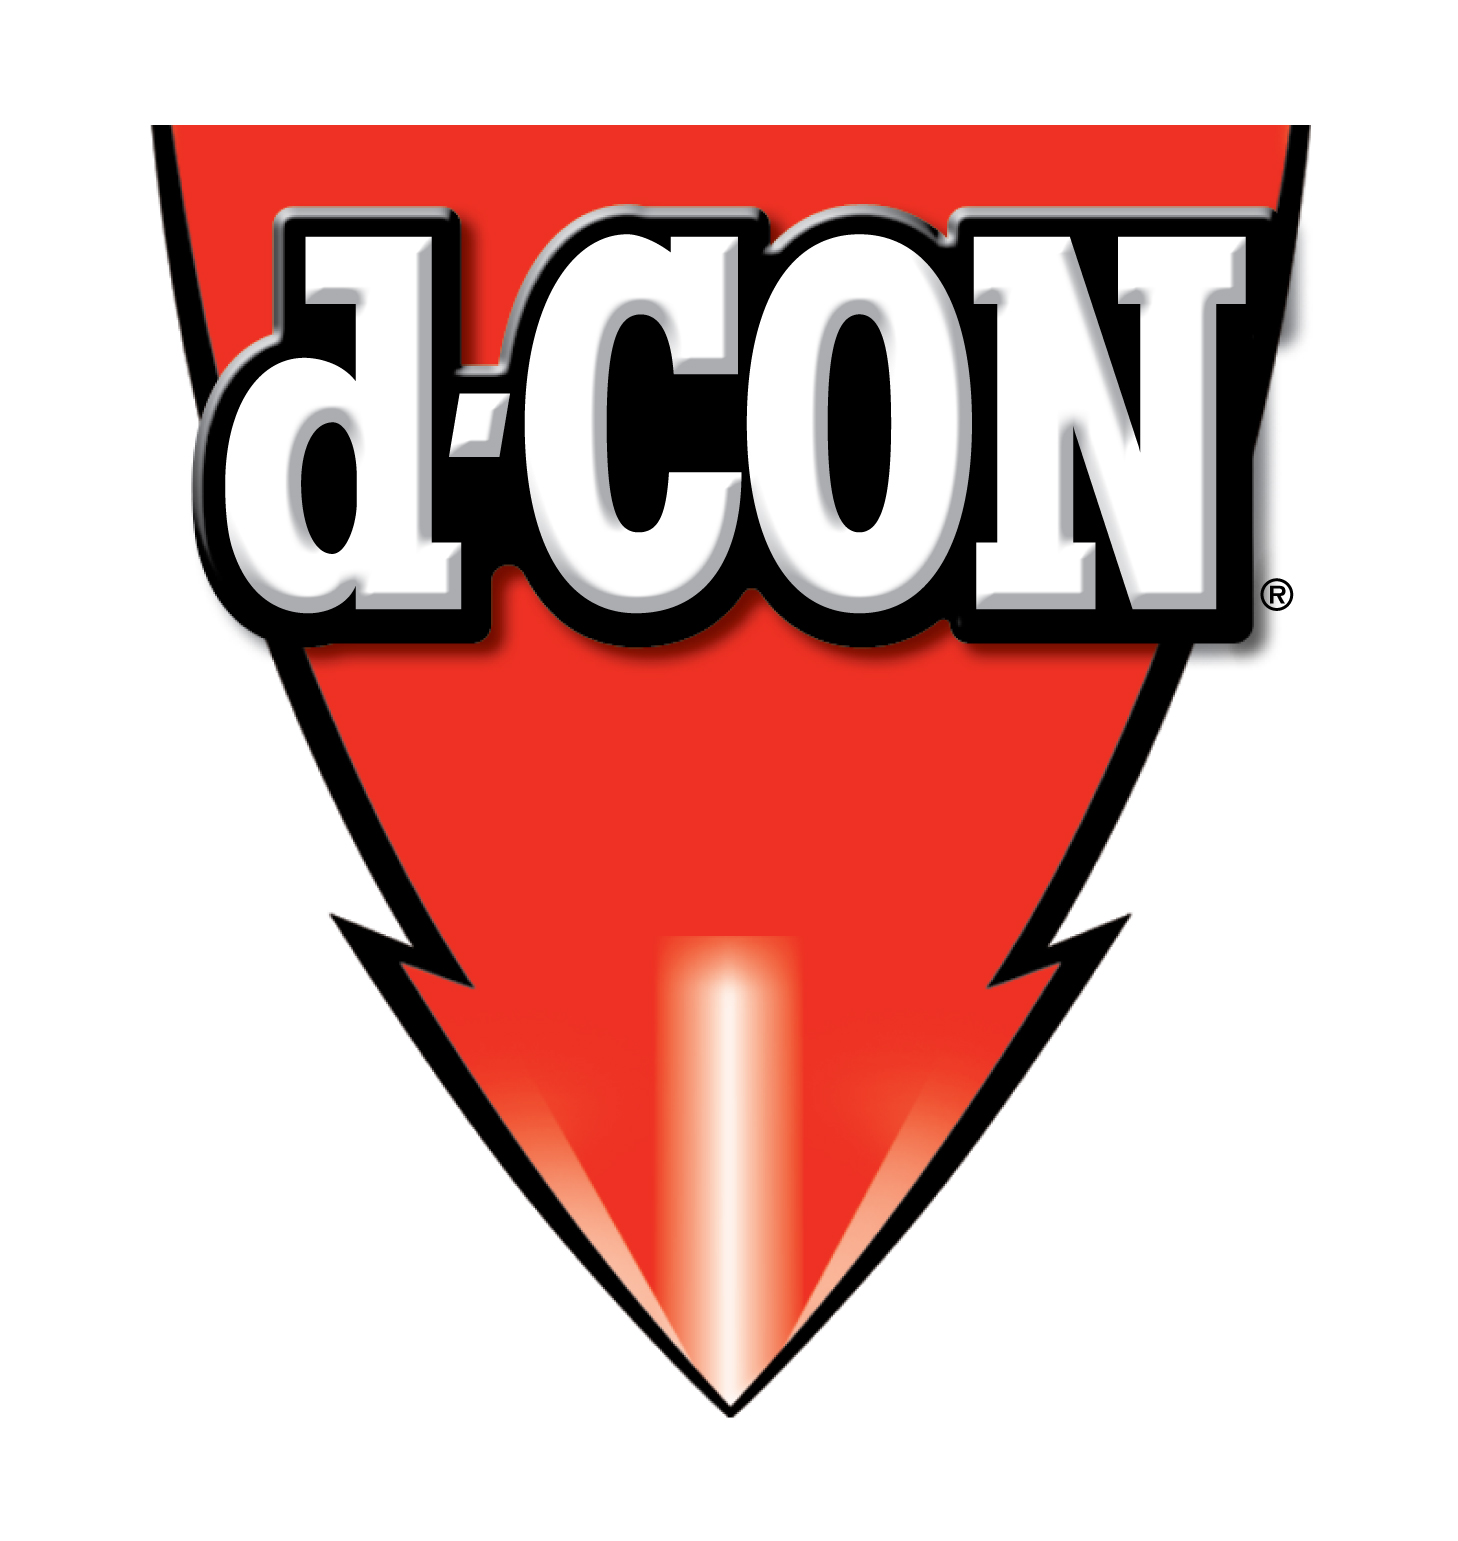 Brand: D-con